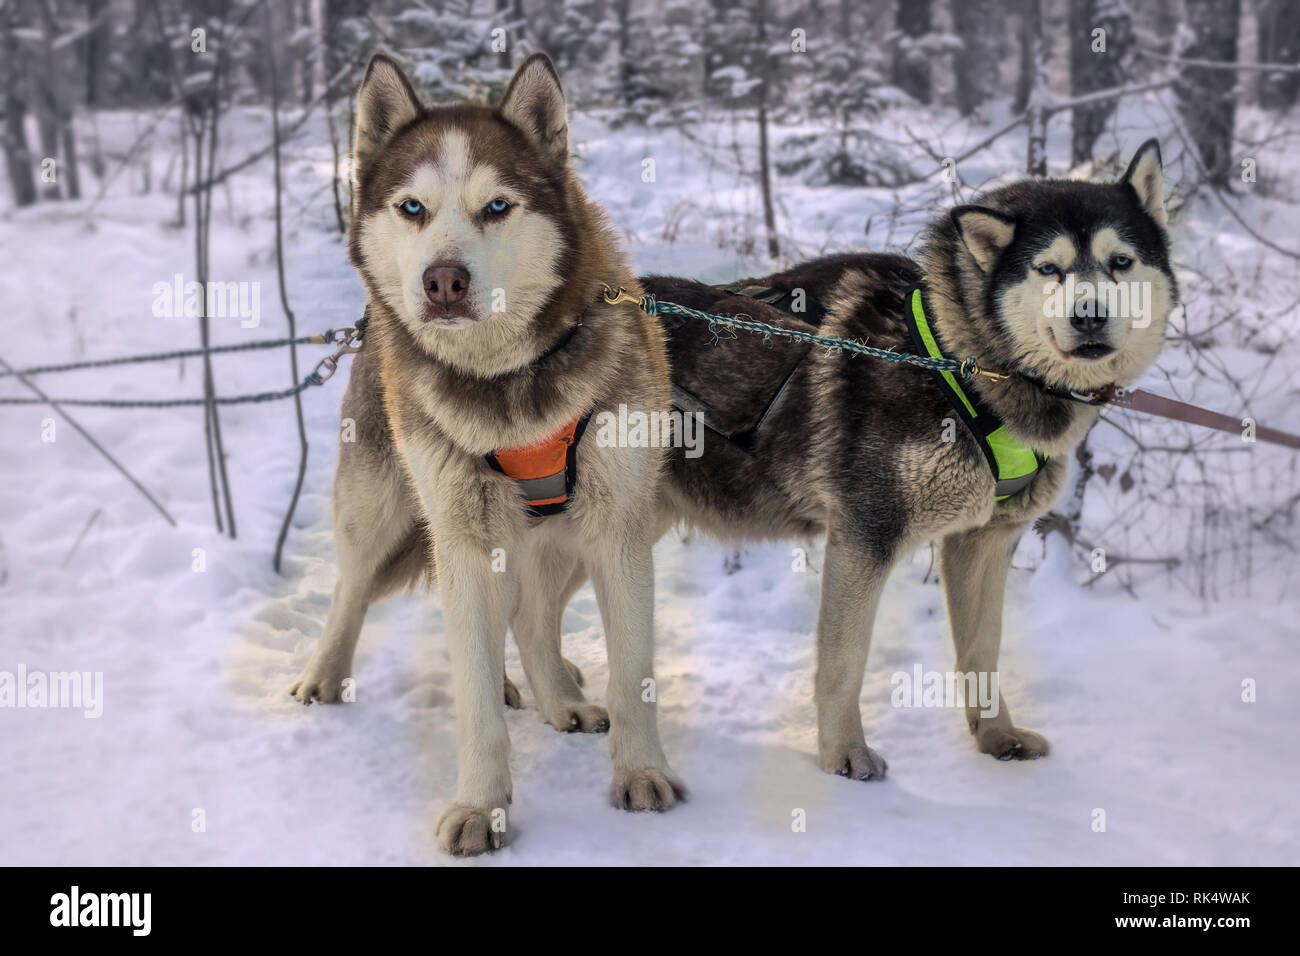 Les courses de chiens de traîneau neige hiver Alaskan Malamute race concurrence Banque D'Images